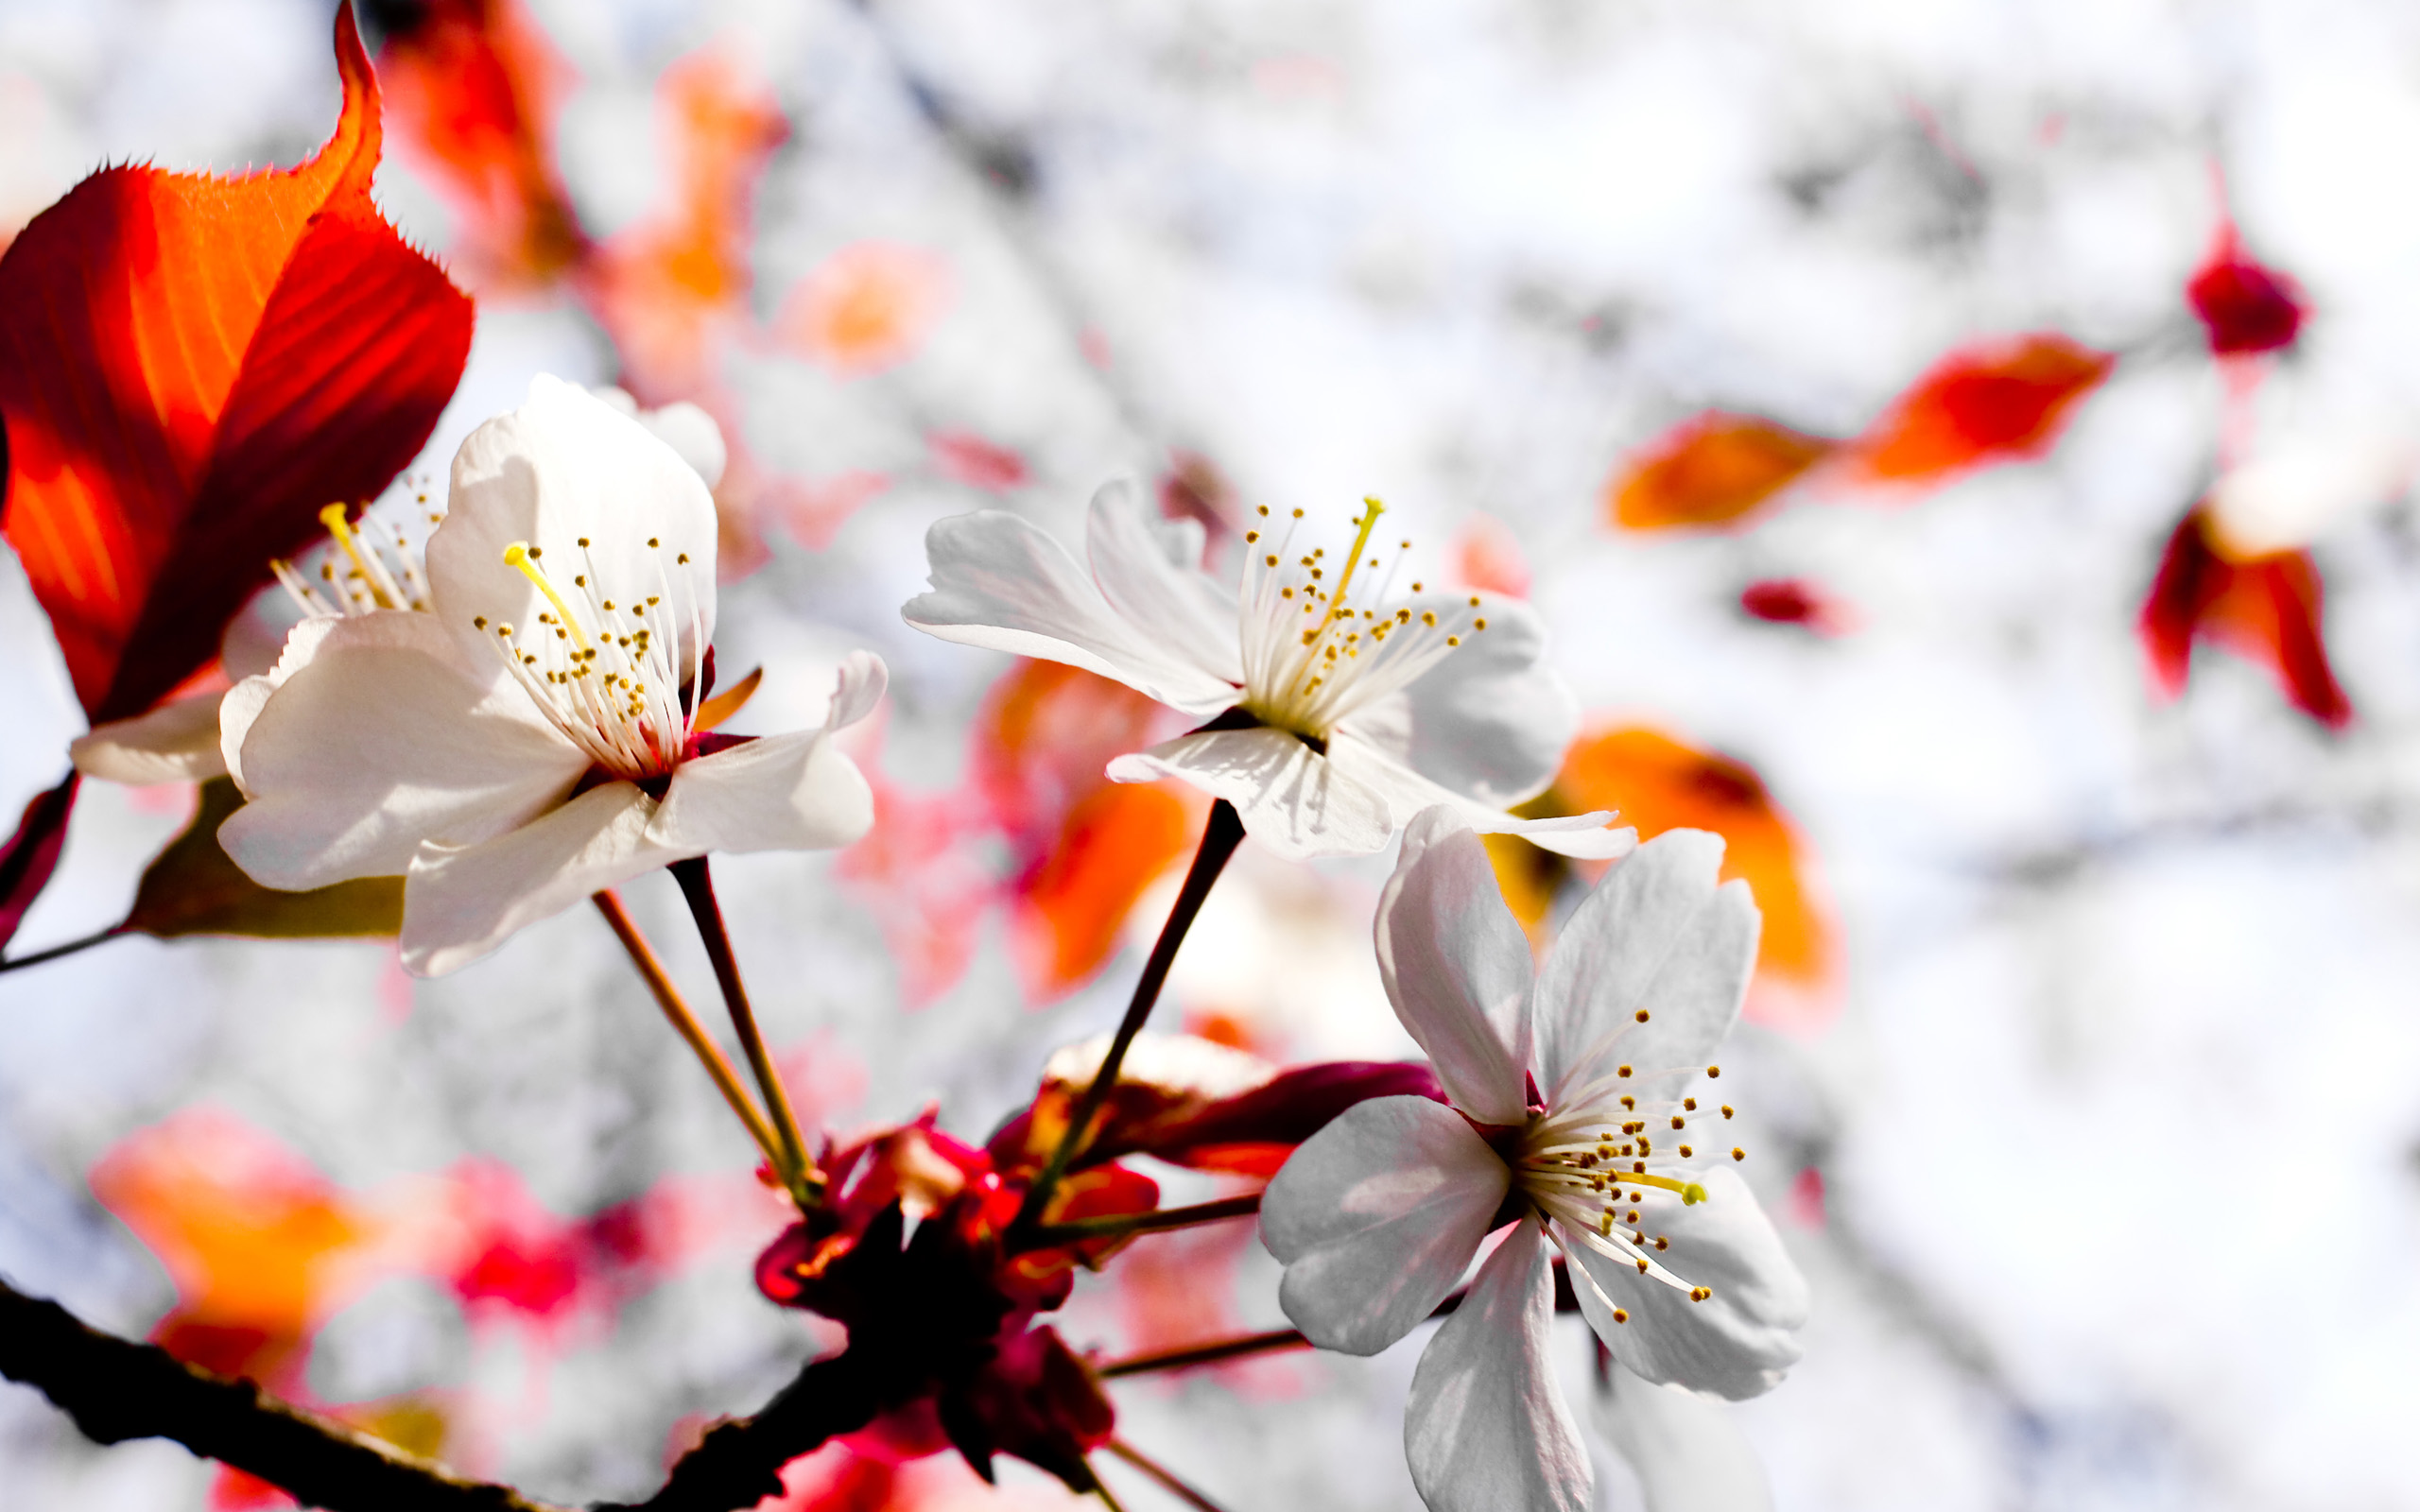 Обои цветок вишня сакура на рабочий стол